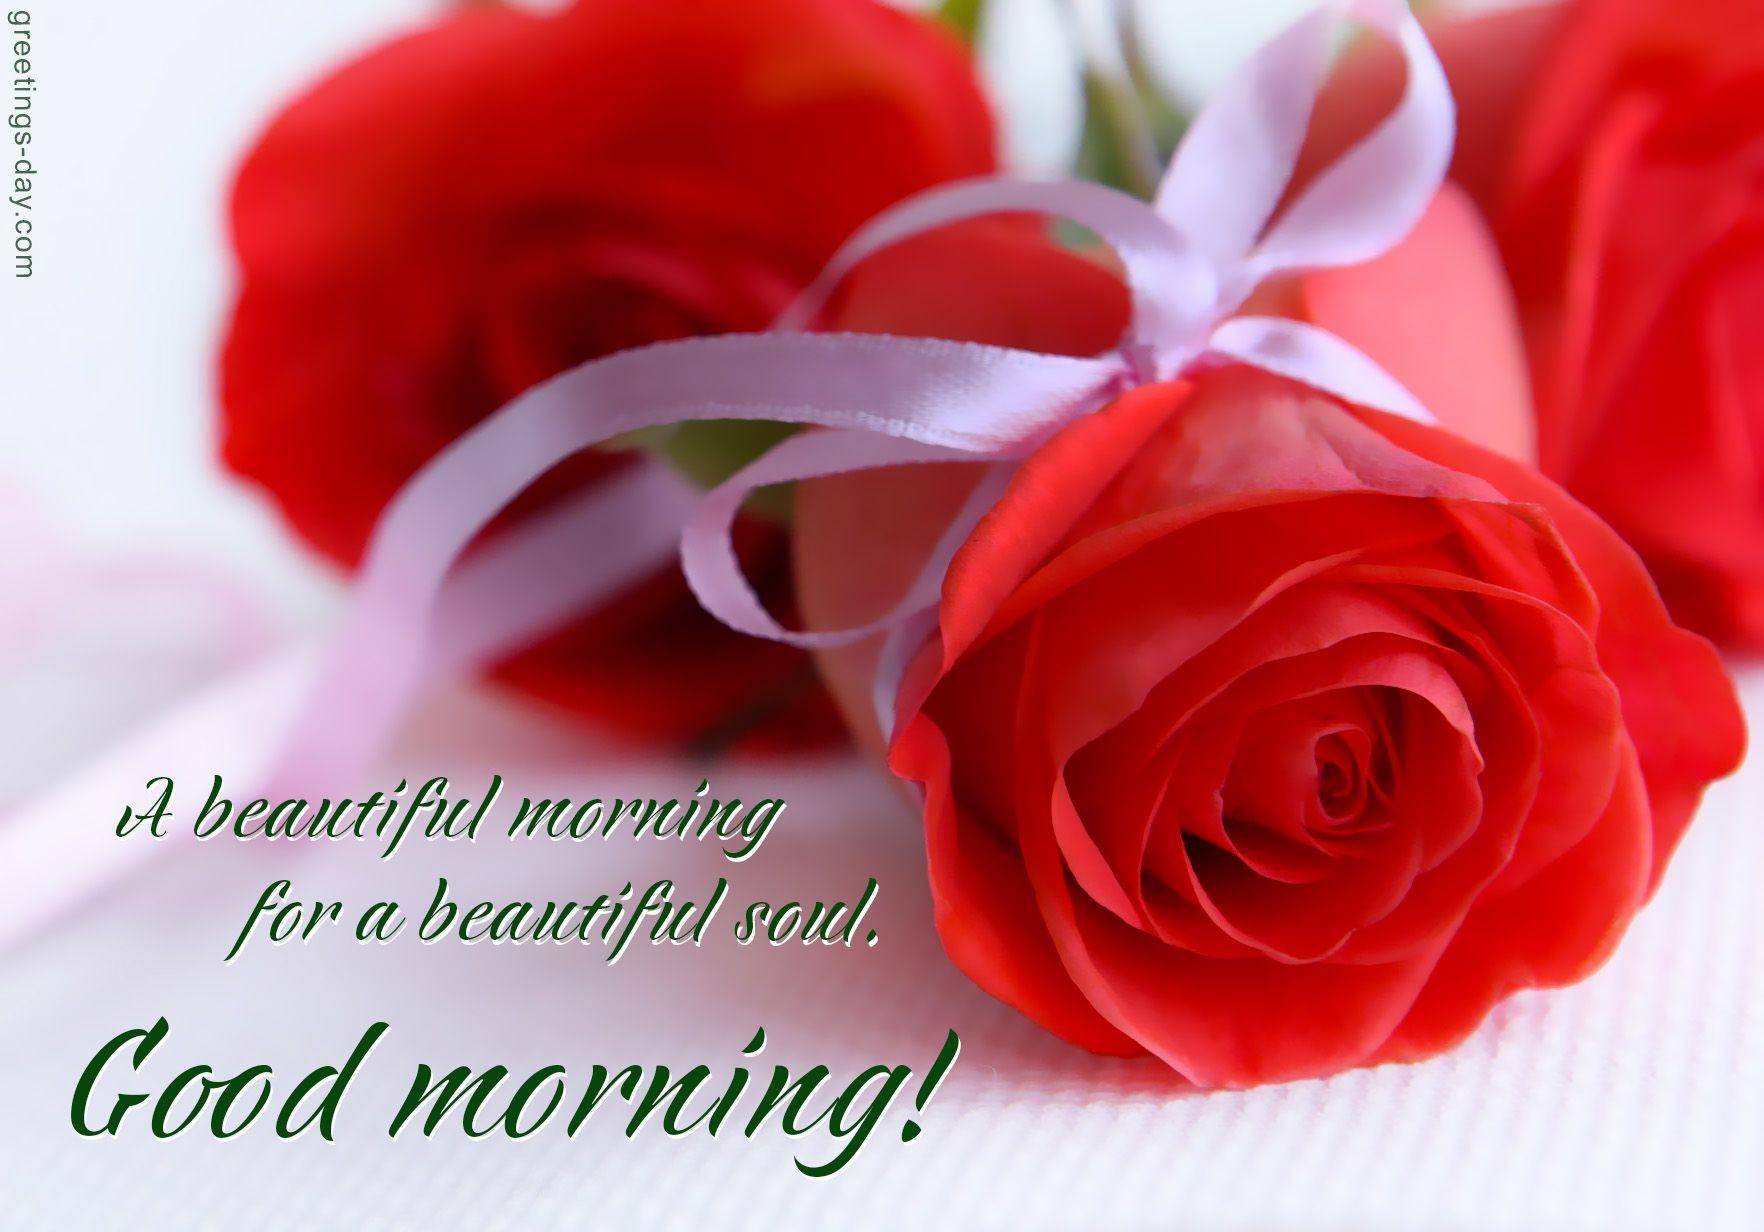 Good Morning Rose Flower Wish Image